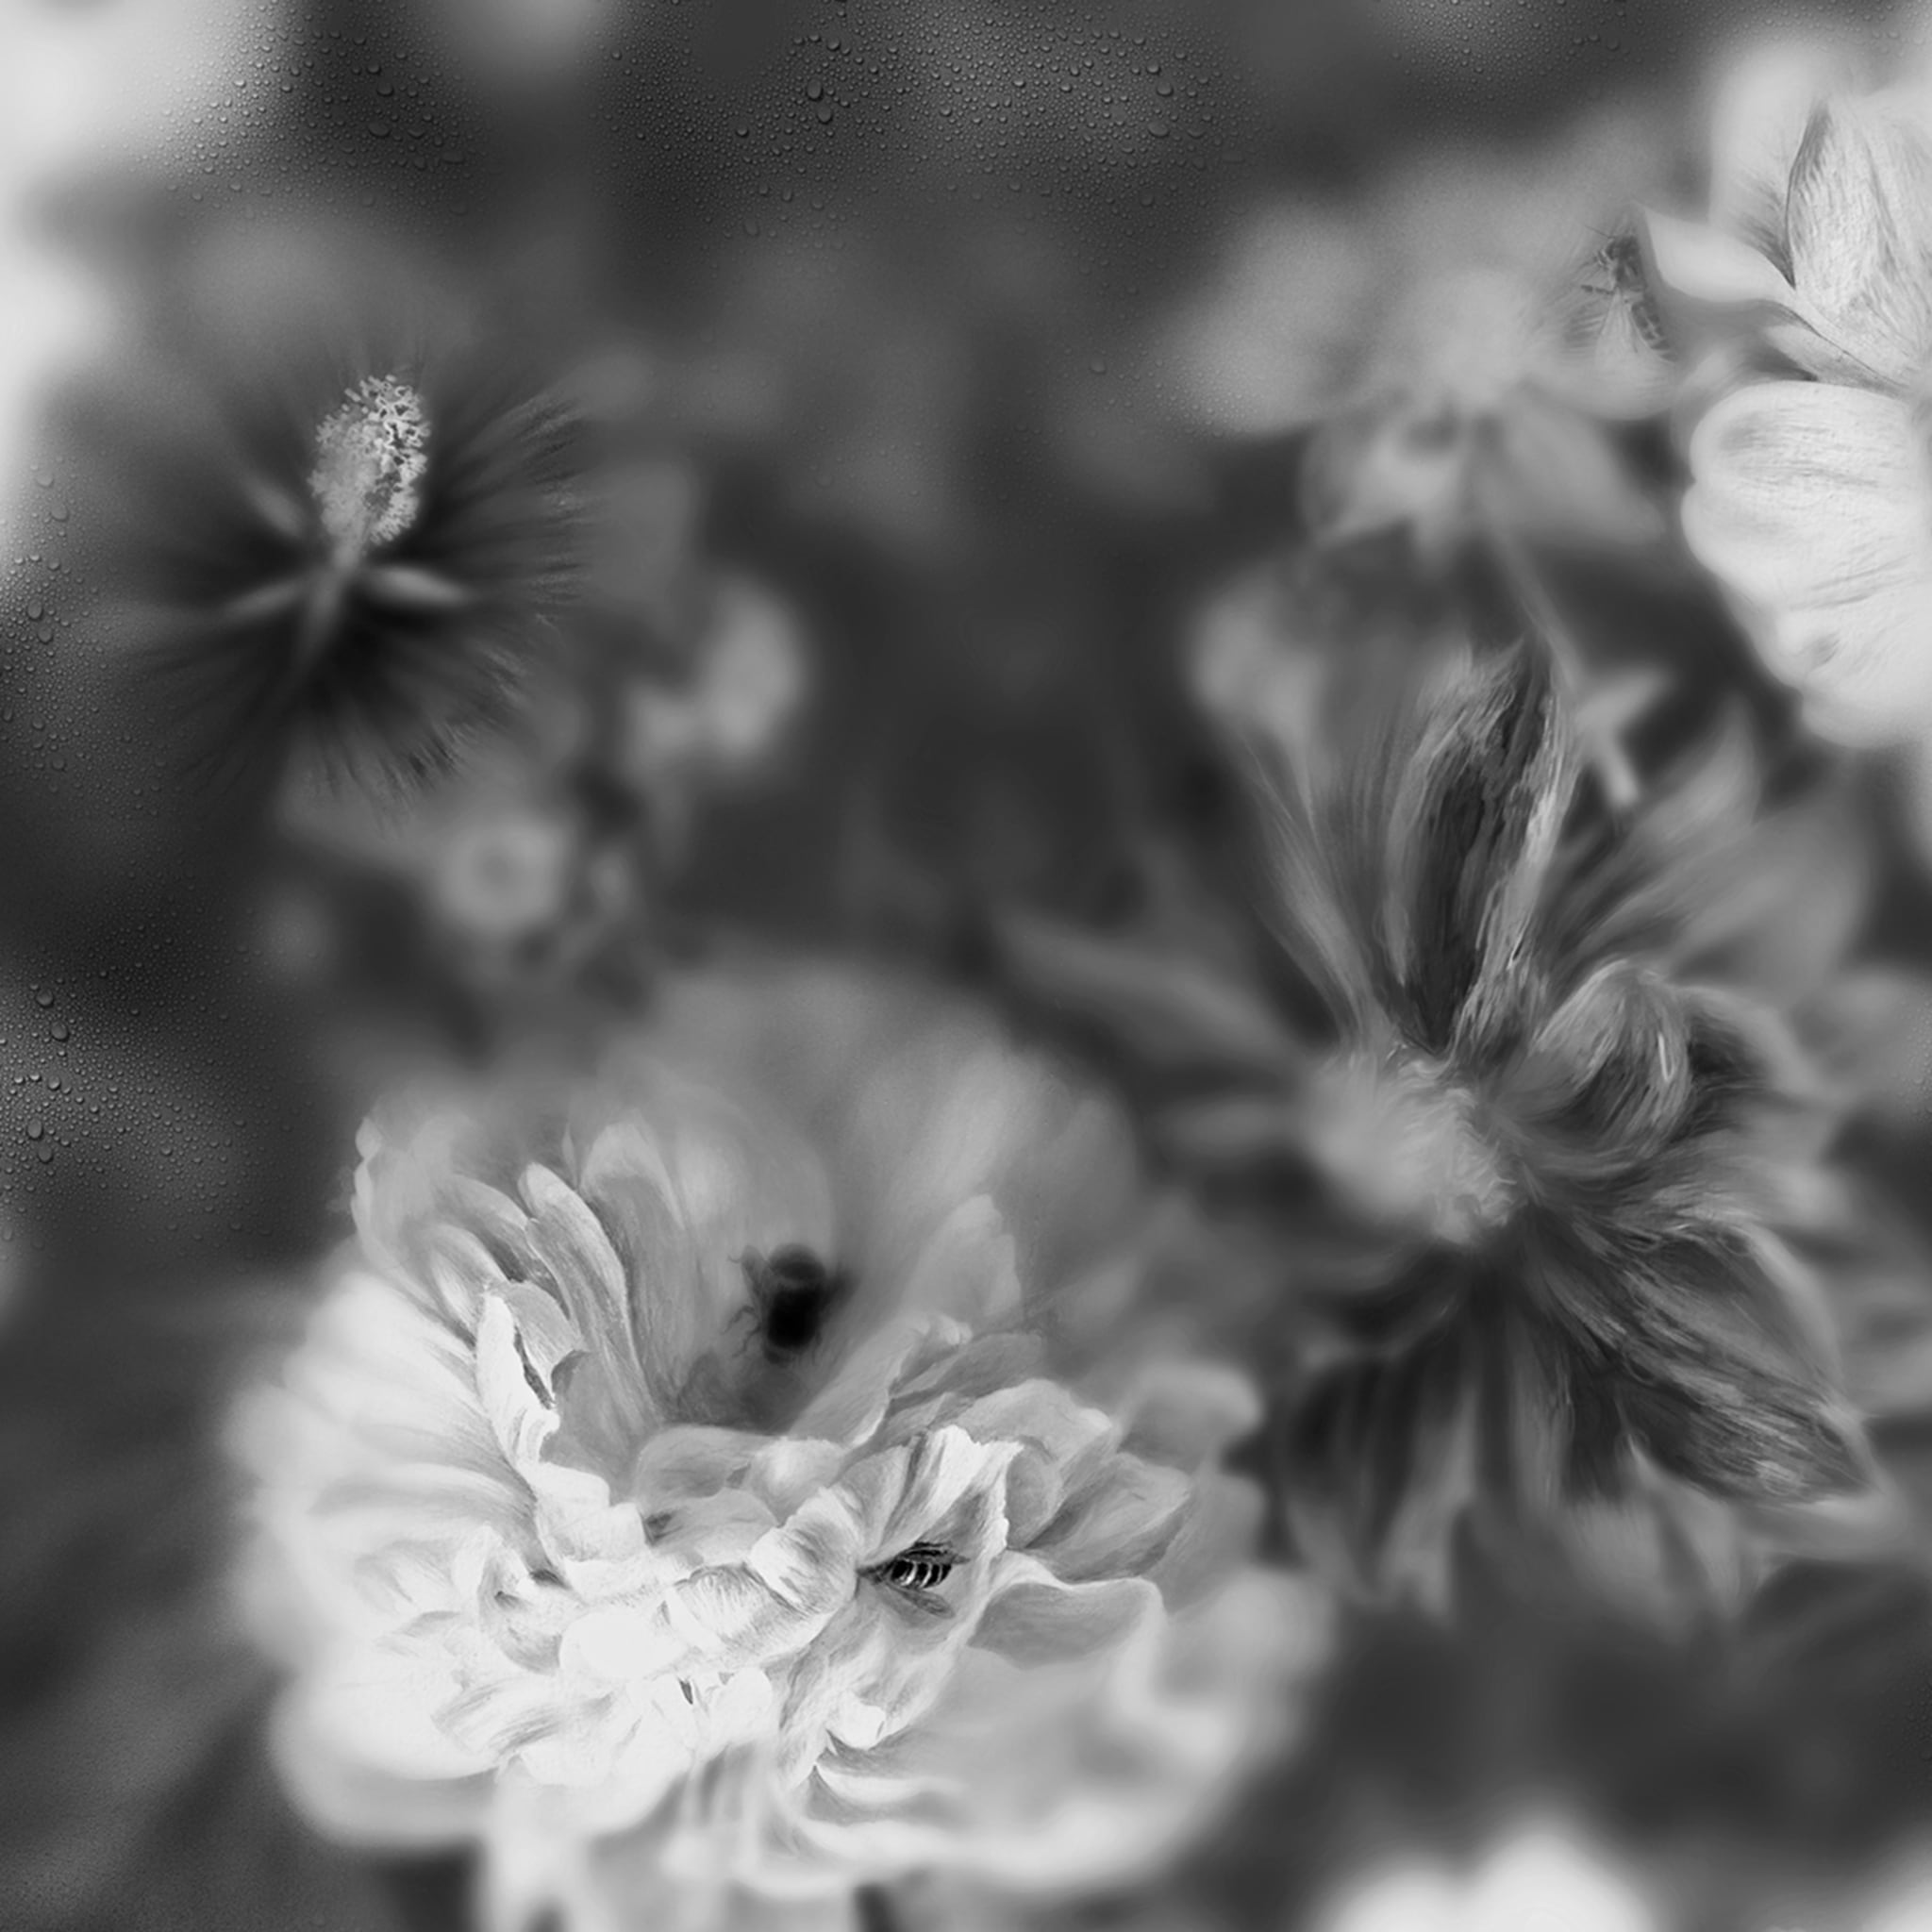 Blossom Black & White Wallpaper  - Alternative view 1